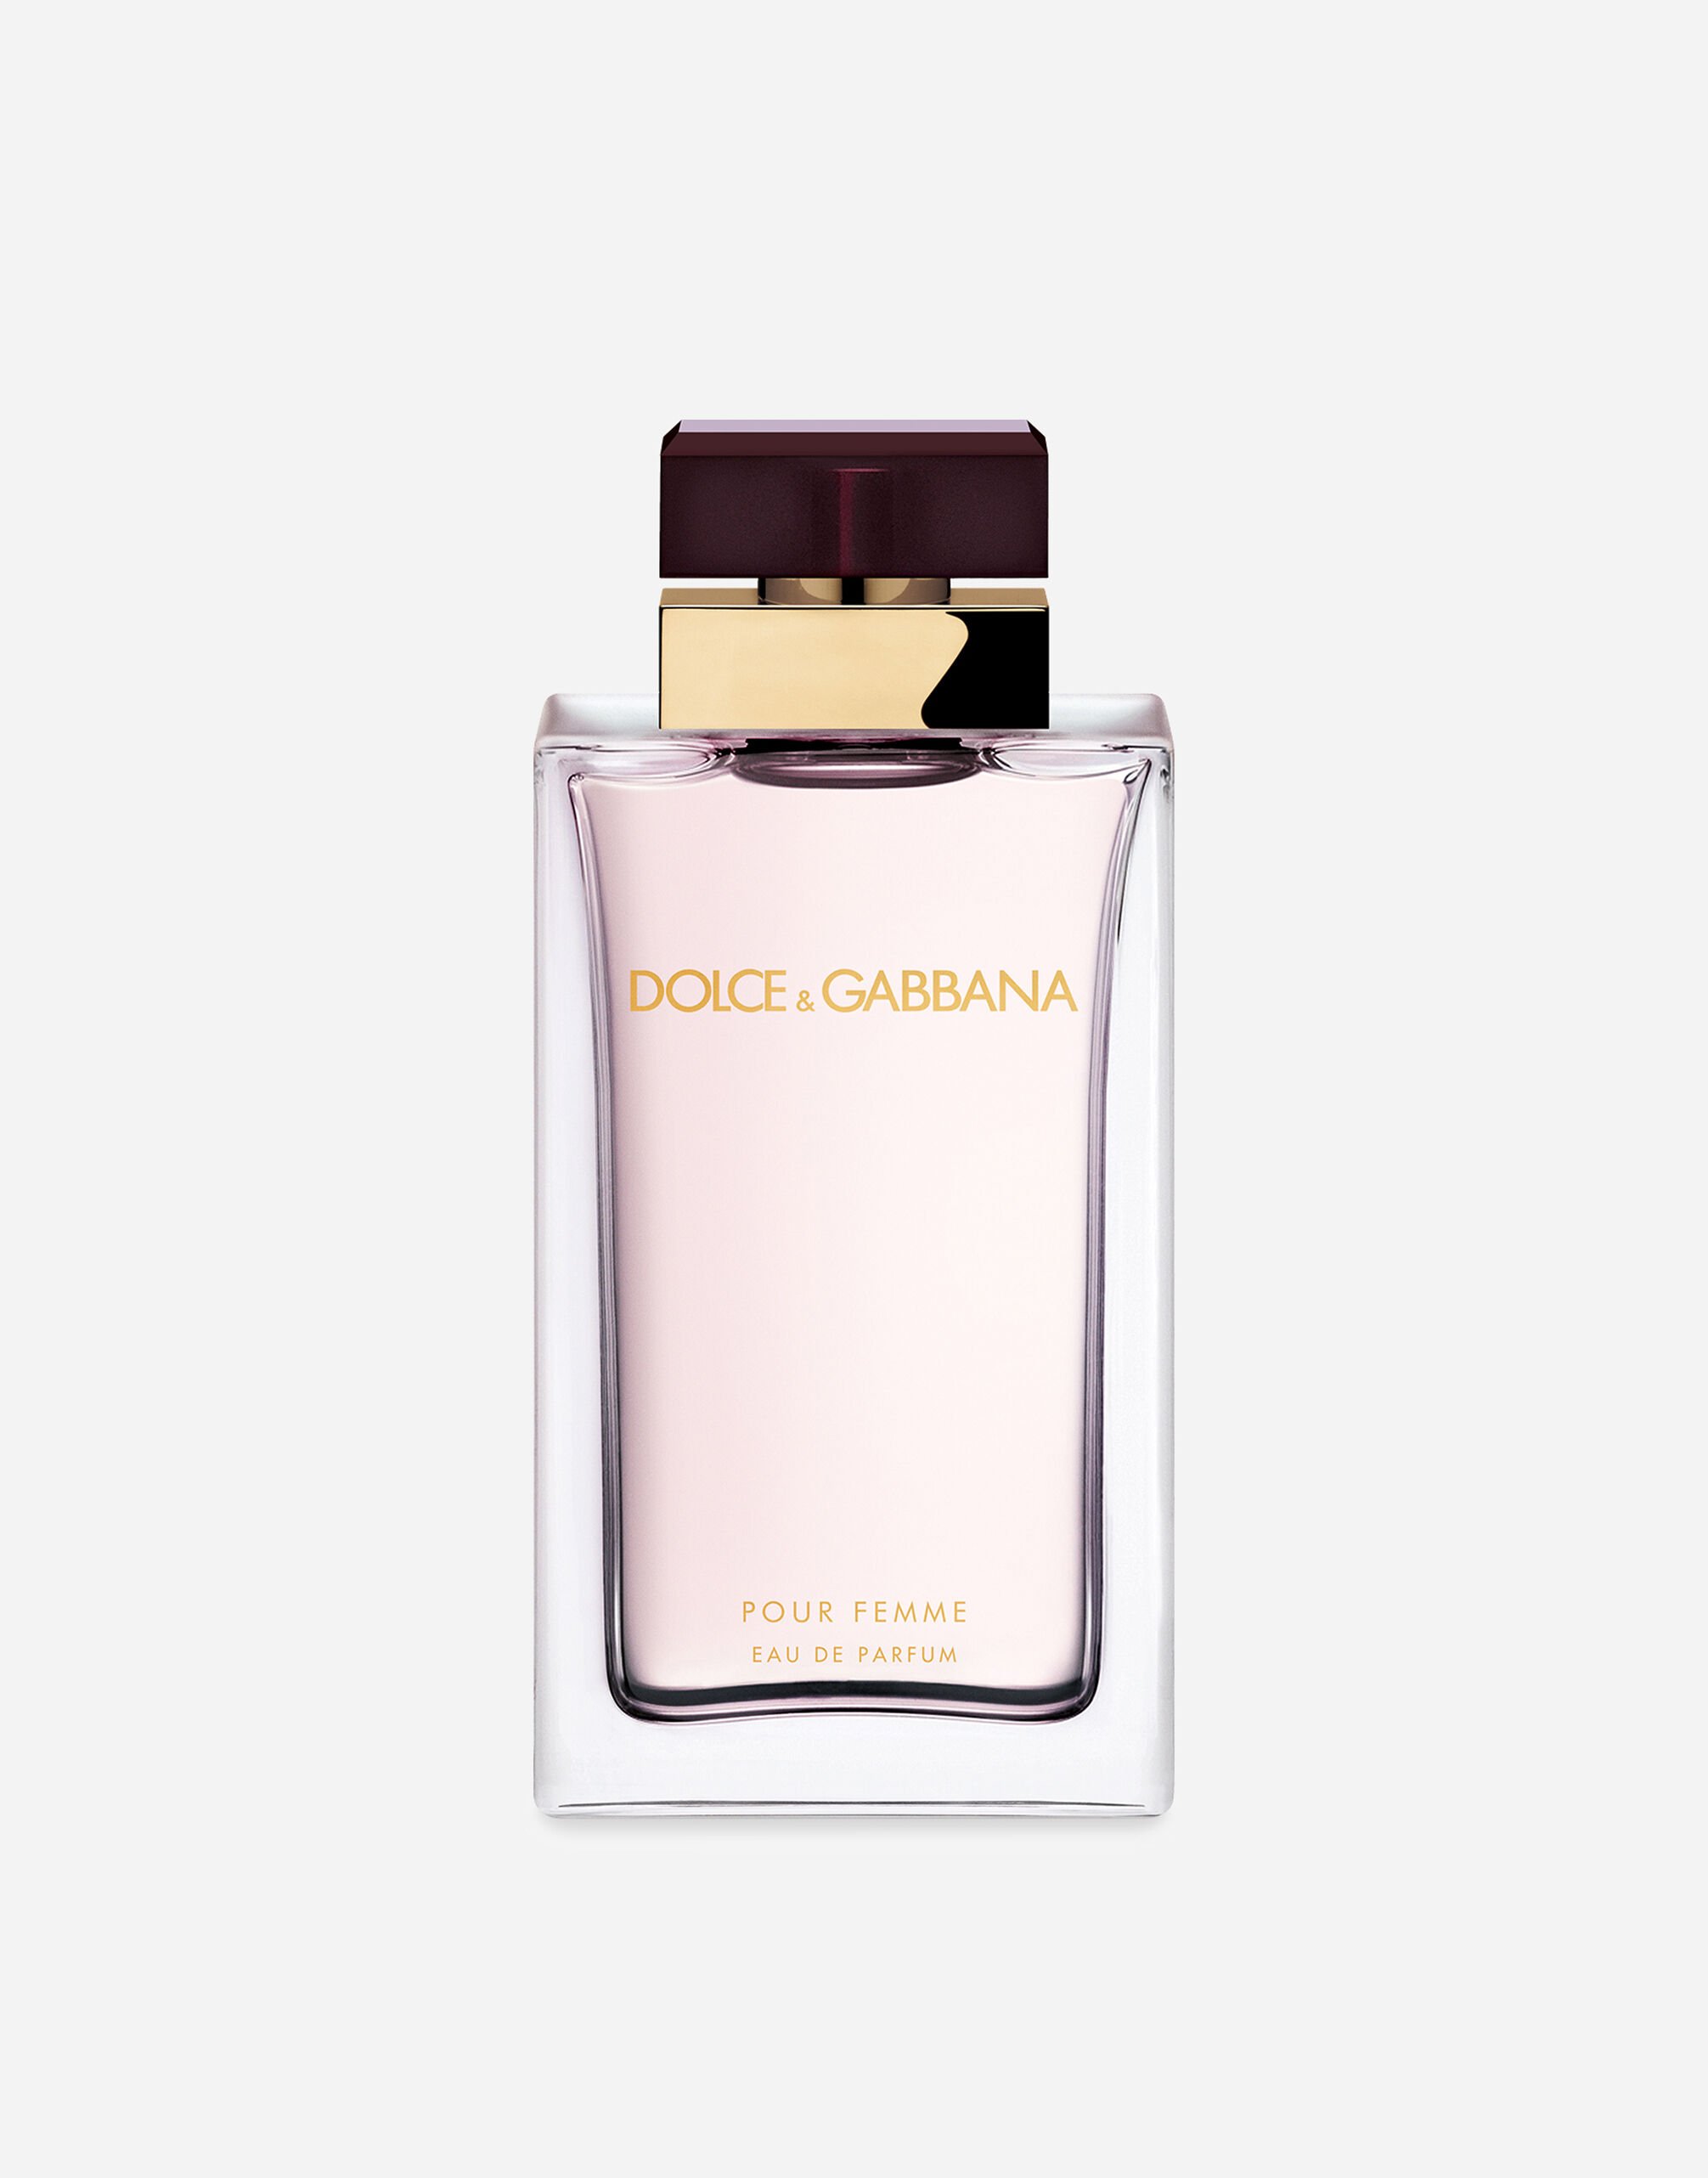 Dolce & Gabbana Pour Femme Eau de Parfum - VP003BVP000